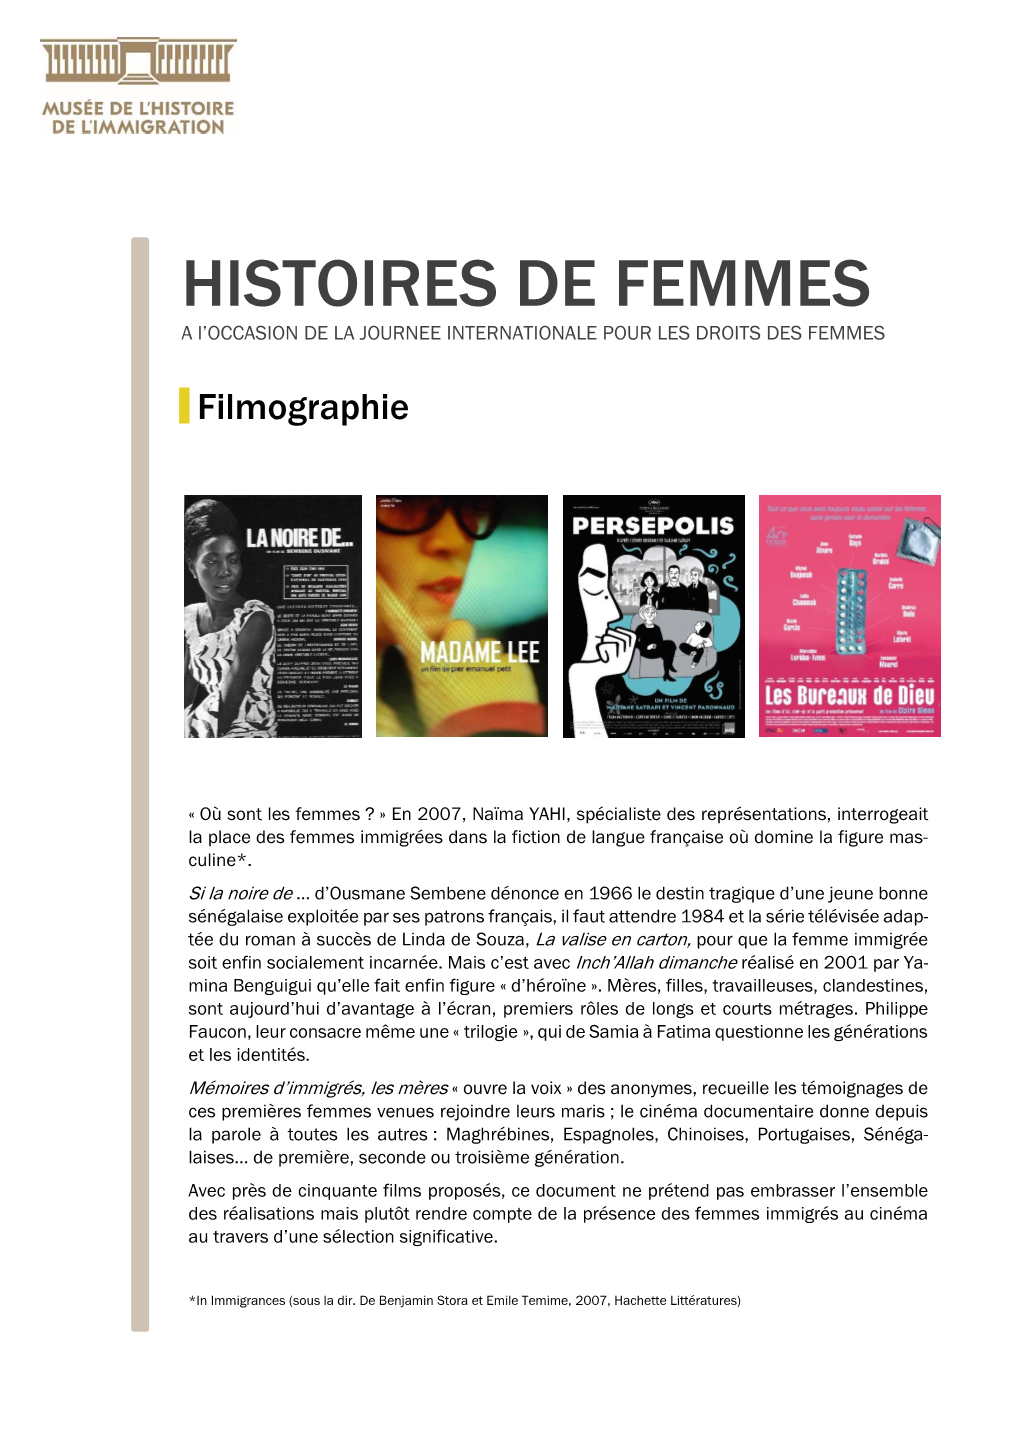 HISTOIRES DE FEMMES a L’OCCASION DE LA JOURNEE INTERNATIONALE POUR LES DROITS DES FEMMES